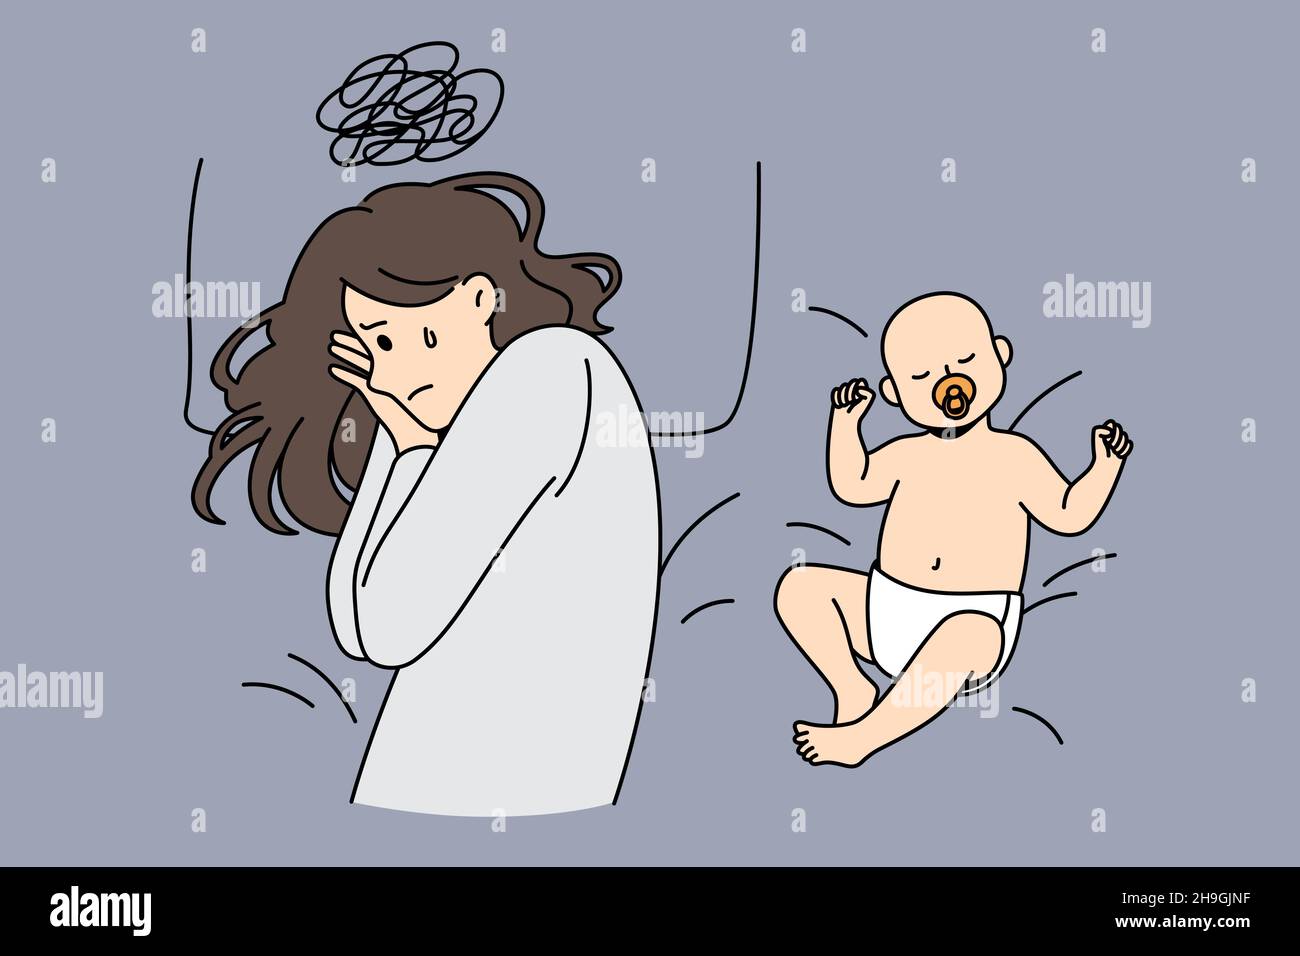 Postpartale Depression und Elternschaft Konzept. Junge depressive traurige Mutter mit harten Gedanken im Bett liegend mit glücklich schlafenden Baby in der Nähe Vektor-Illustration Stock Vektor